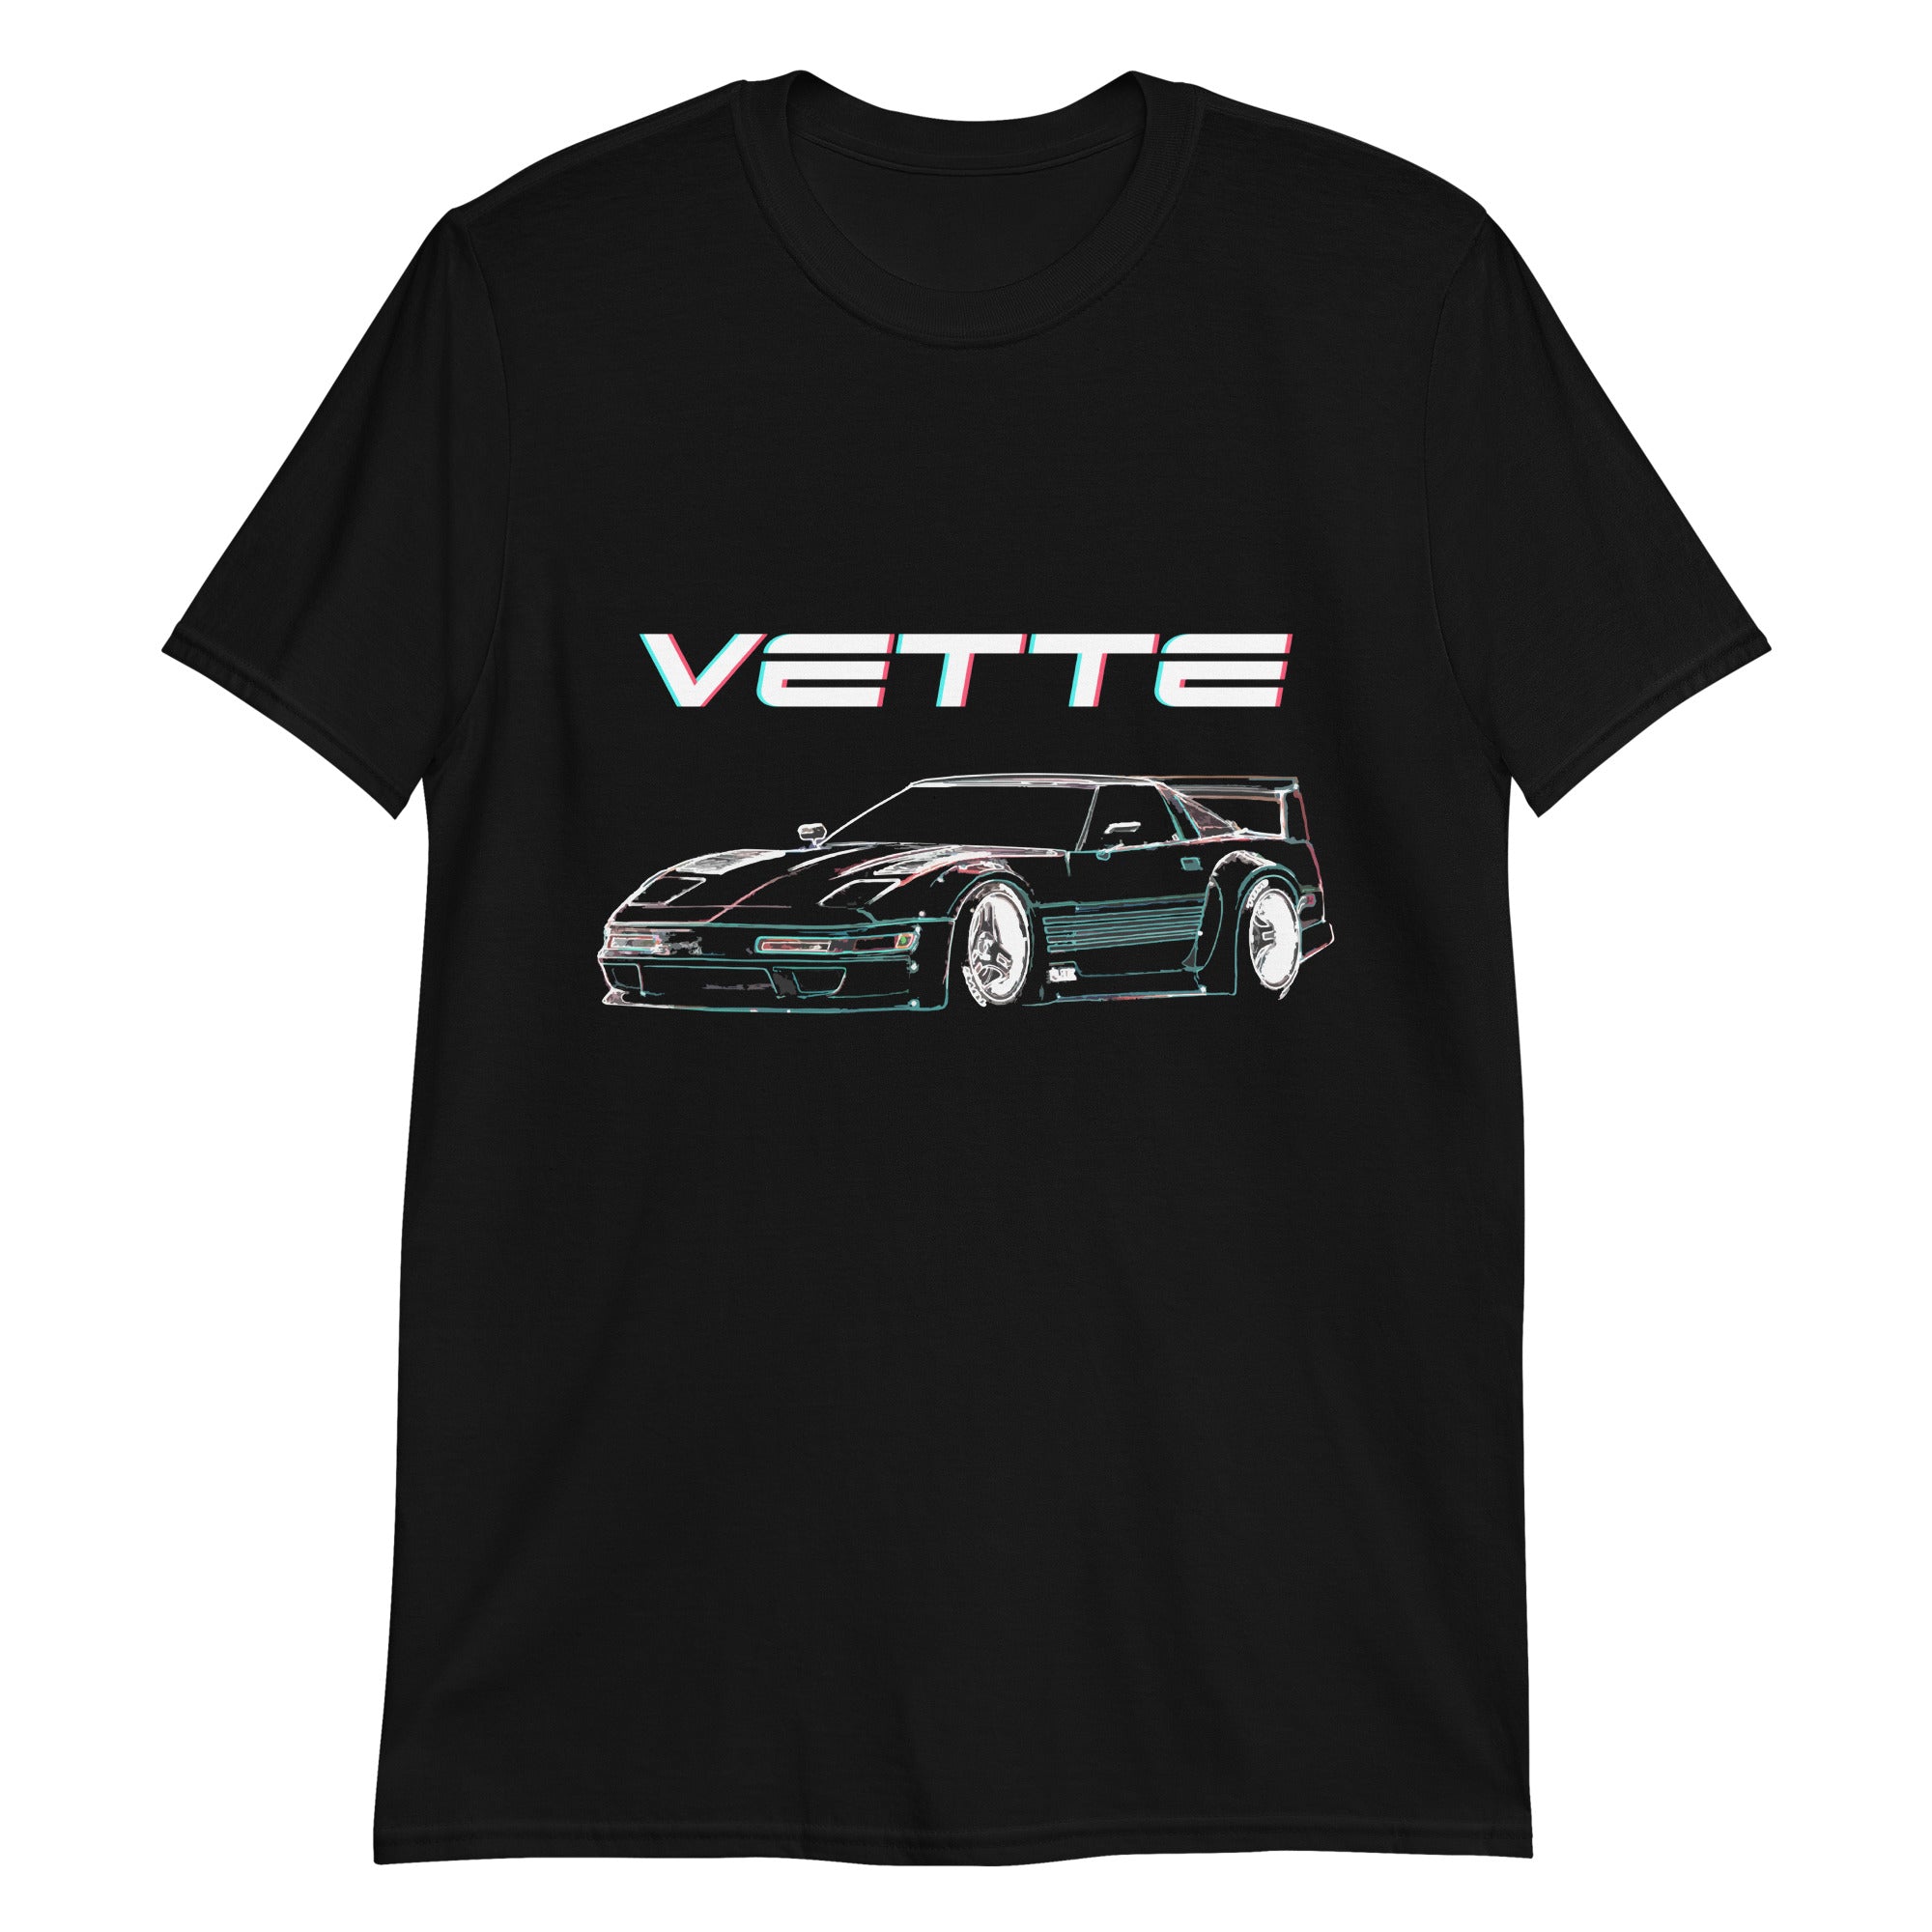 Corvette C4 80s Aesthetic Custom Line Art Short-Sleeve Unisex T-Shirt